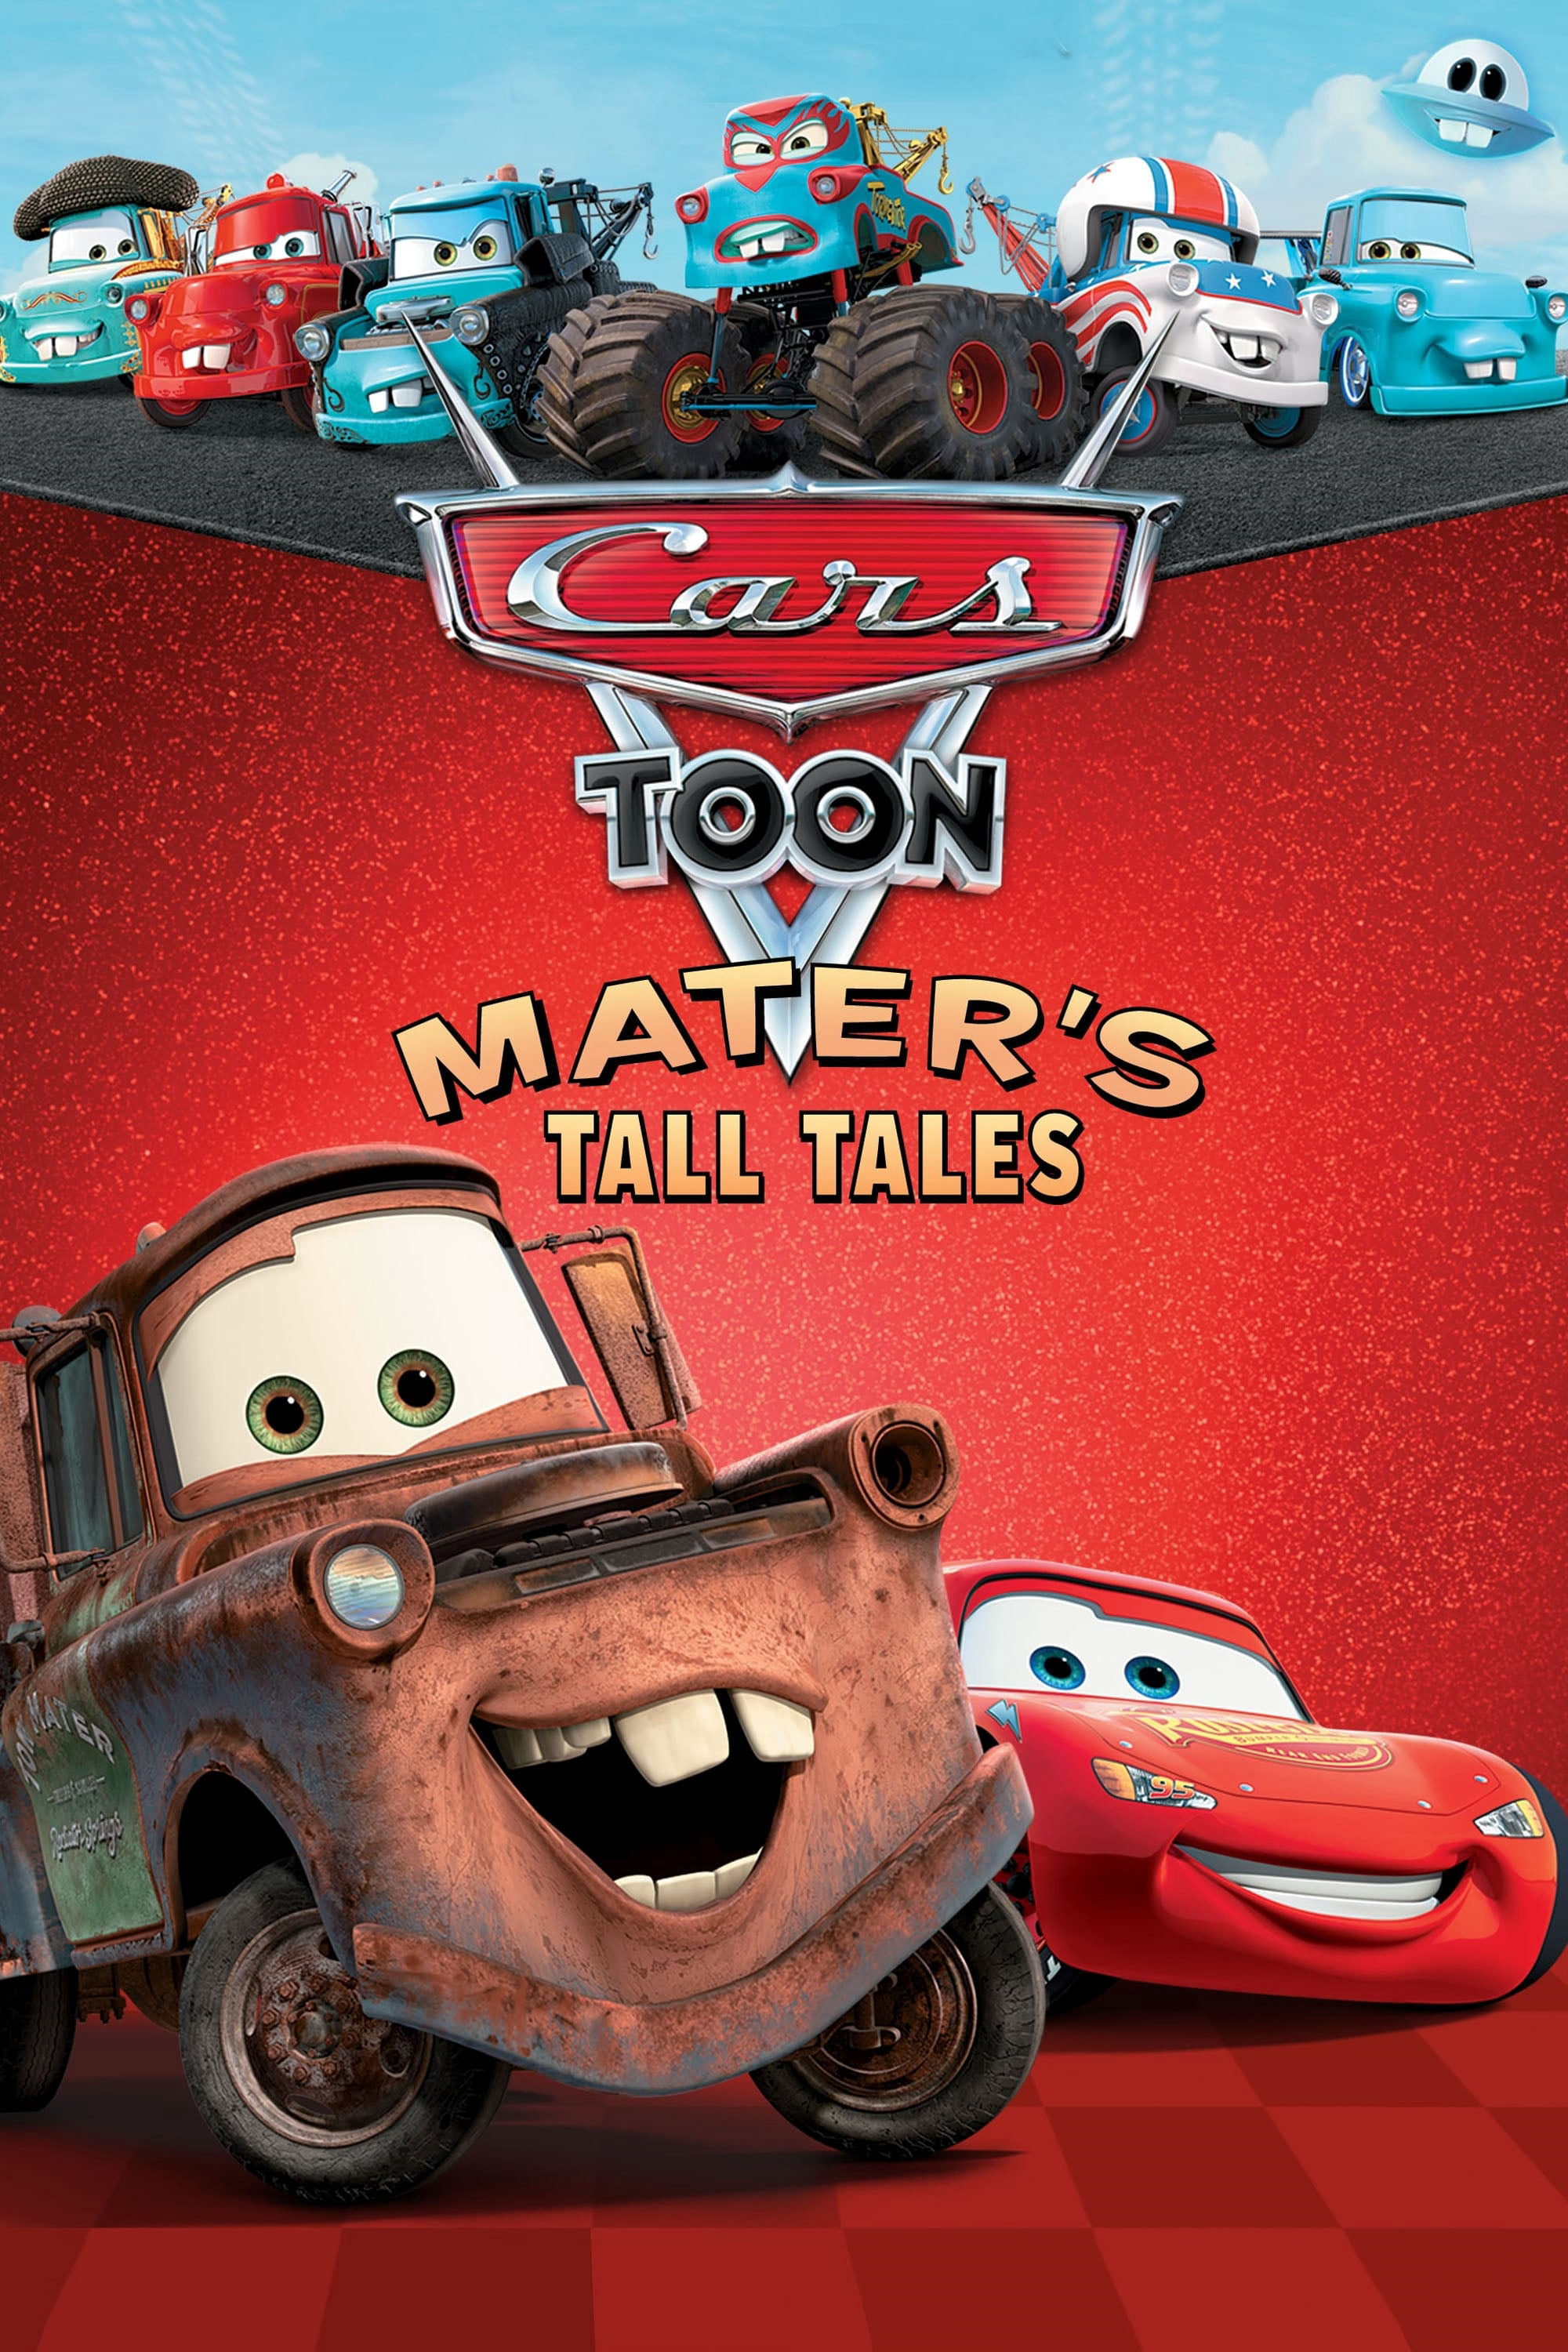 Poster Phim Vương Quốc Xe Hơi- Mater Chém Gió (Cars Toon Mater's Tall Tales)